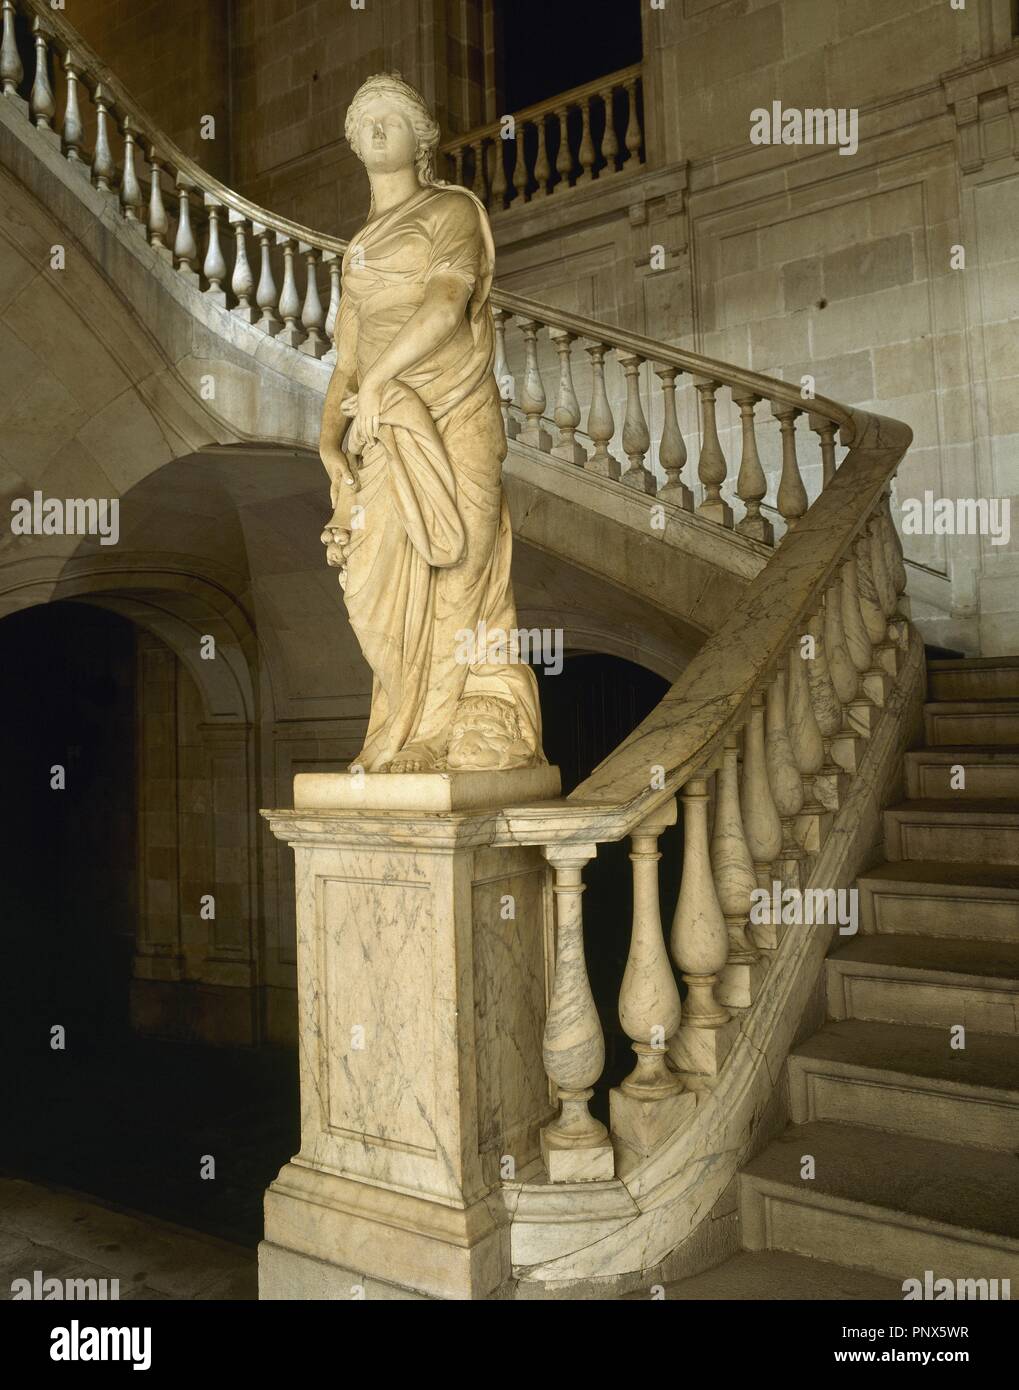 Der Handel. 1802. Allegorische Skulptur von Salvador Gurri Corominas (1749-1819) am Fuße der Treppe der Ehre in der Casa Llotja de Mar Marmor. Barcelona. Katalonien. Spanien. Stockfoto